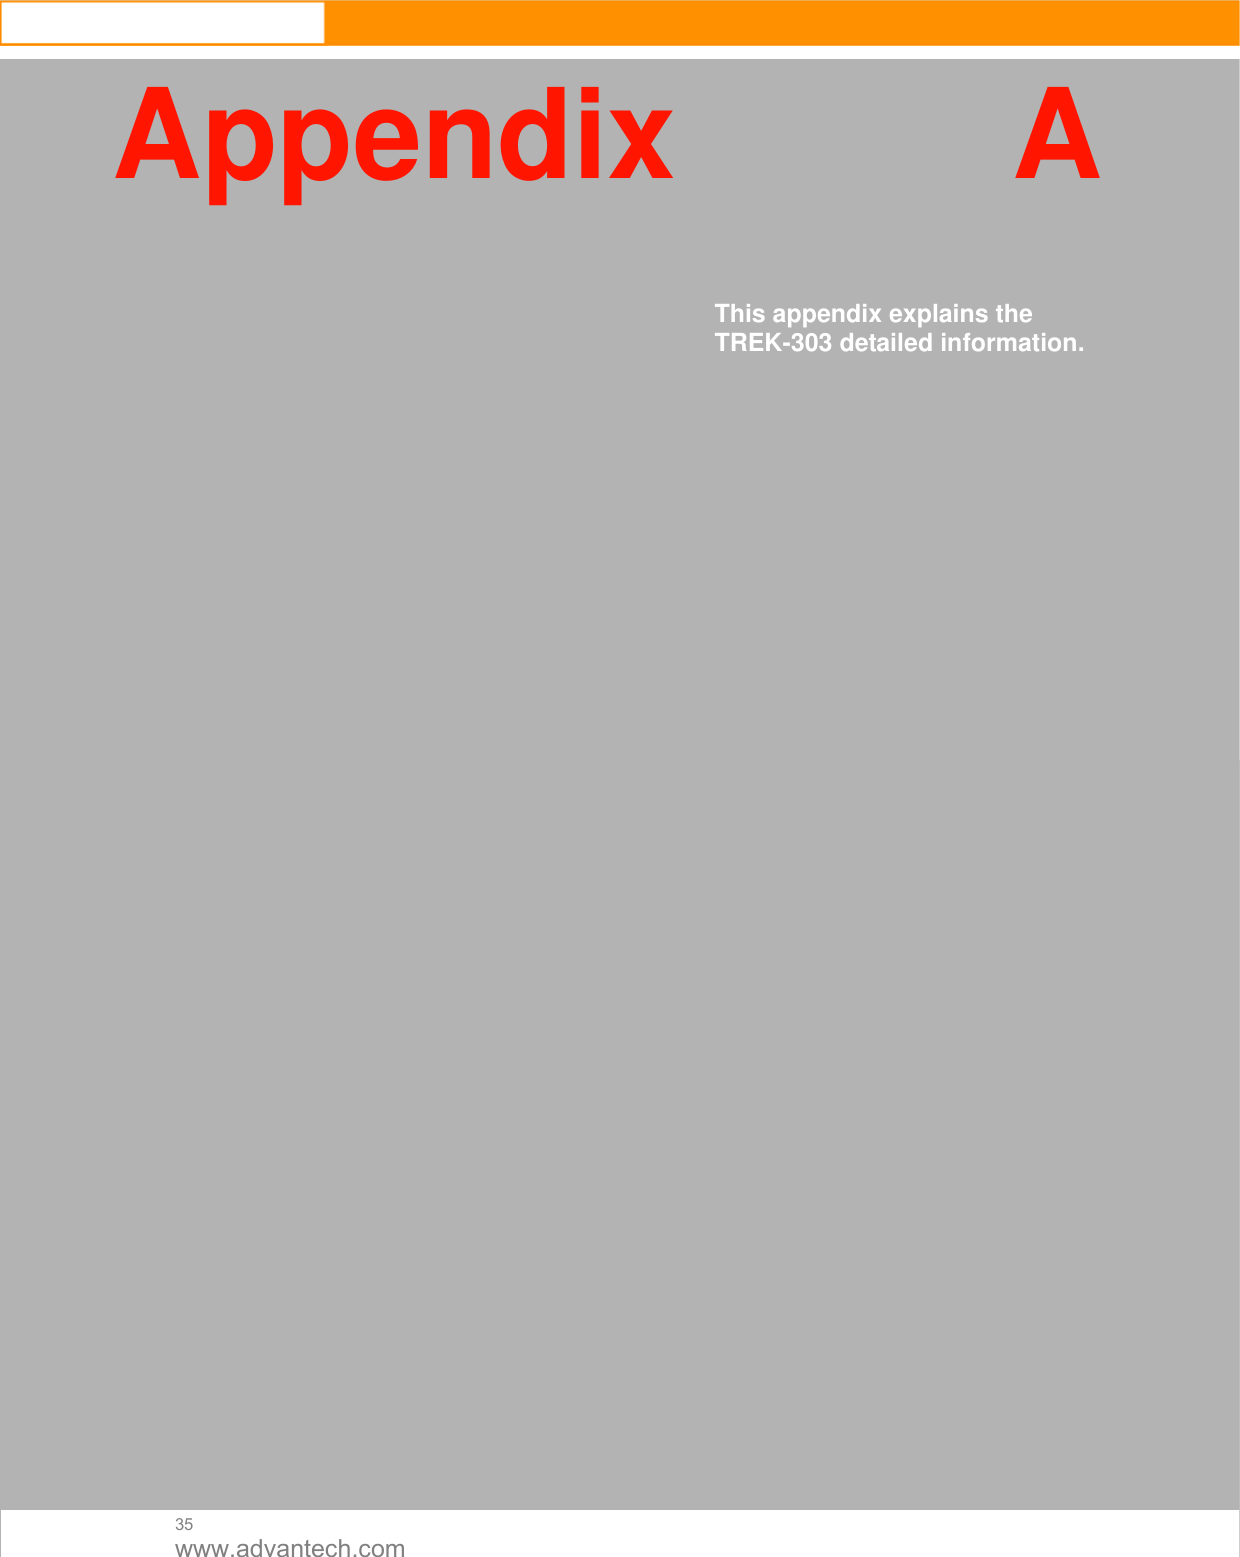  35 www.advantech.com Appendix A     This appendix explains the TREK-303 detailed information.                                               